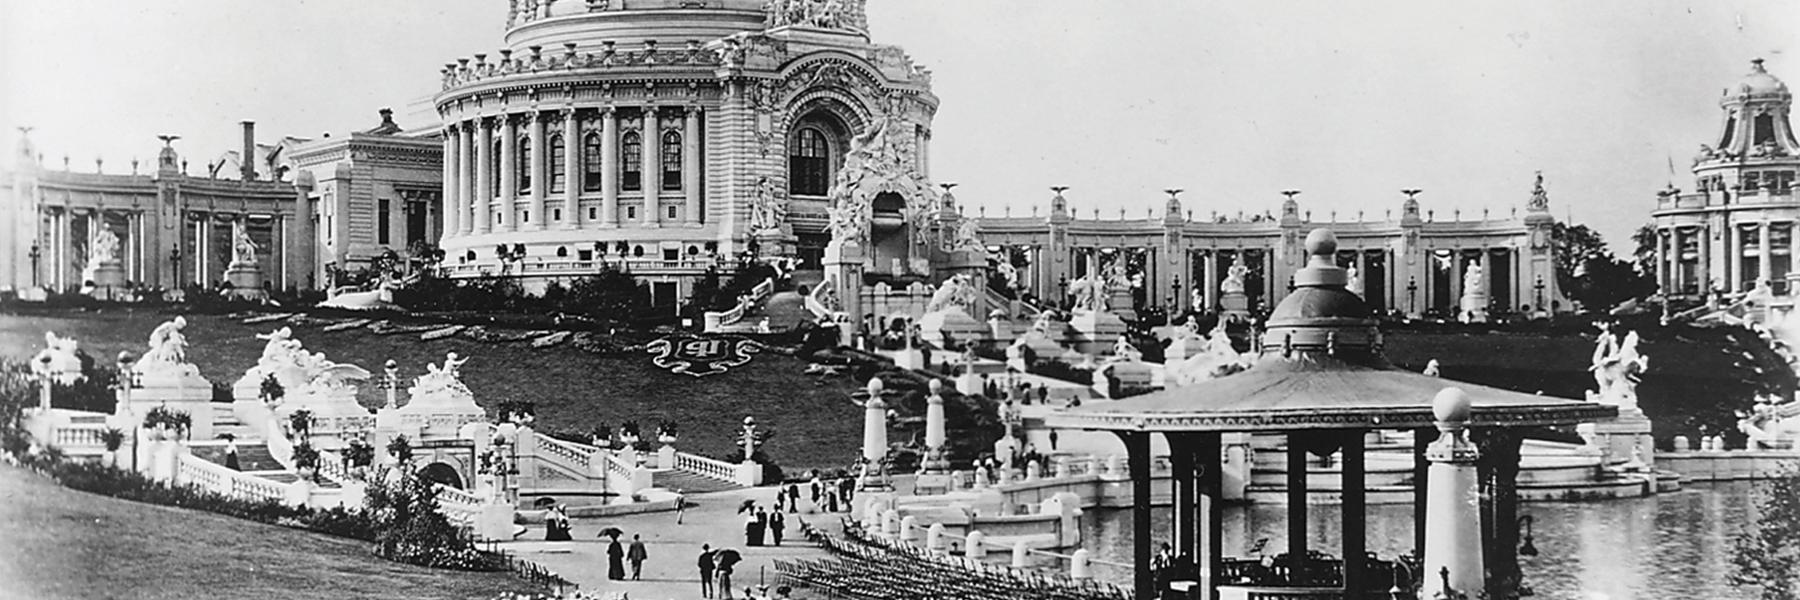 1904年的世界博览会在圣保罗的森林公园举行. 路易.